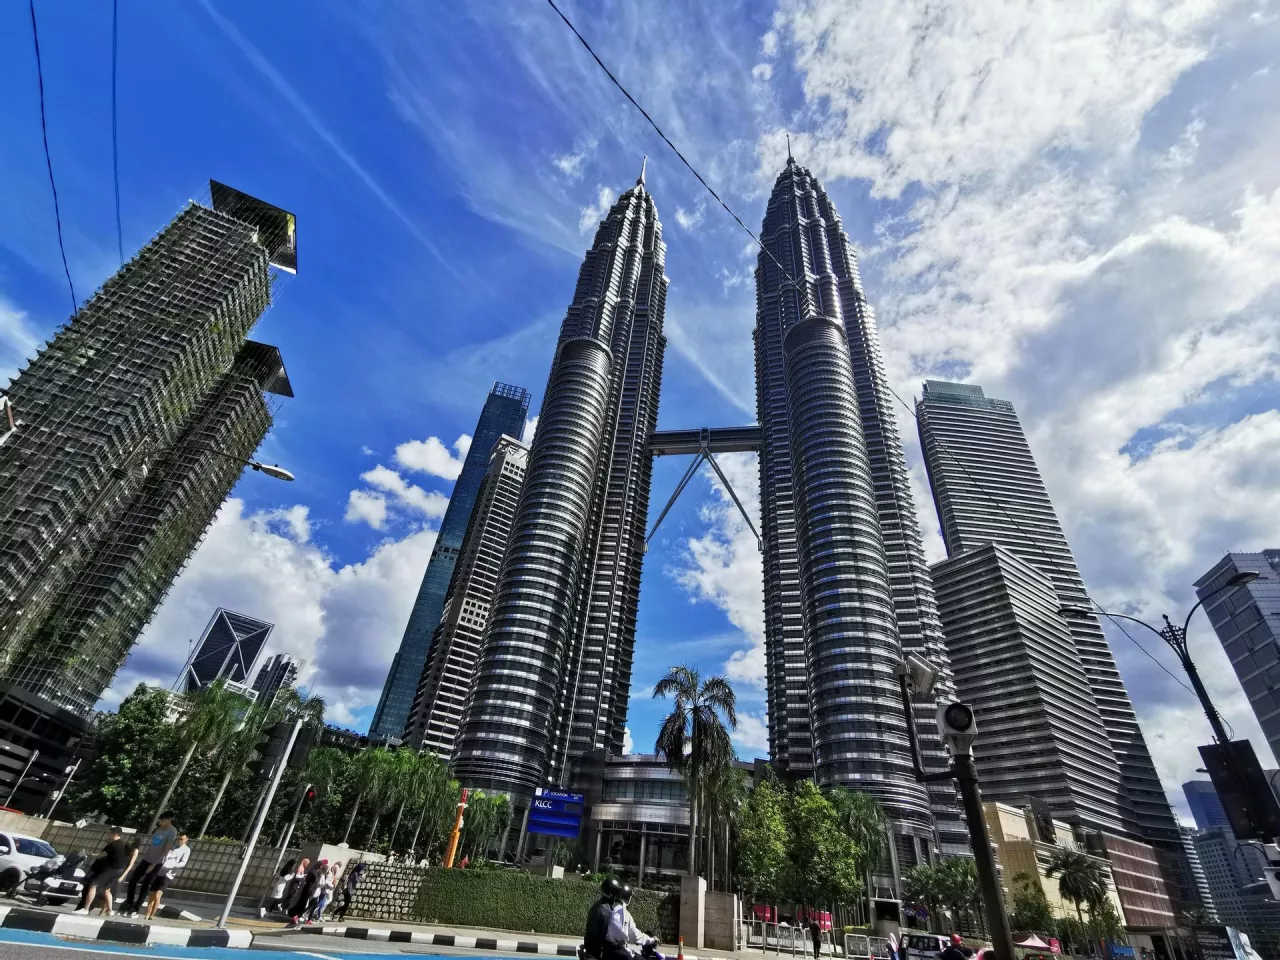 Petronas Towers w Kuala Lumpur, stolicy Malezji (Unsplash.com/Sua Truong)